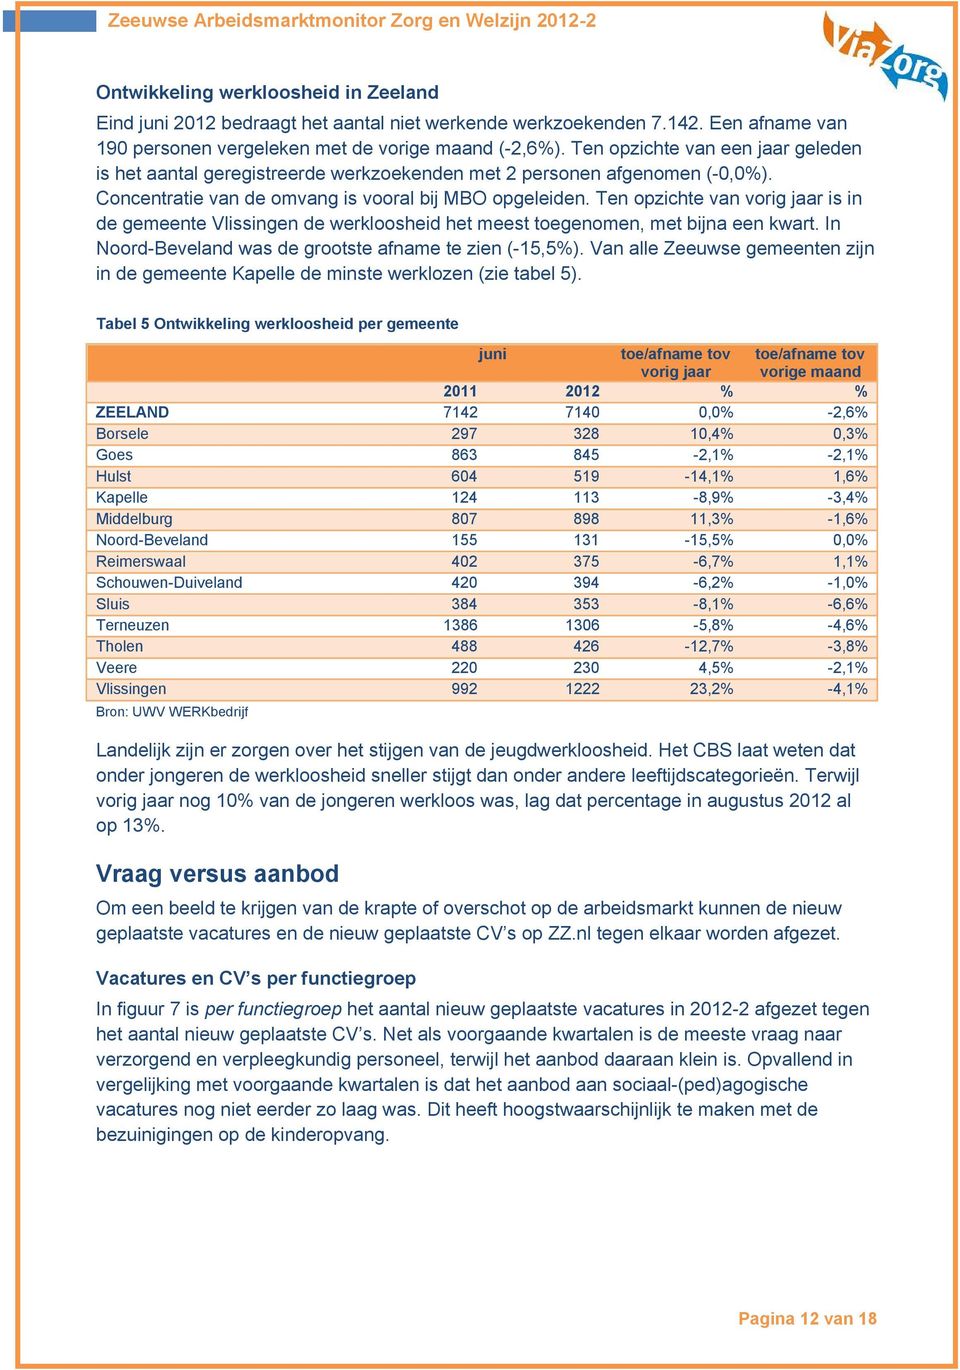 Ten opzichte van vorig jaar is in de gemeente Vlissingen de werkloosheid het meest toegenomen, met bijna een kwart. In Noord-Beveland was de grootste afname te zien (-15,5%).